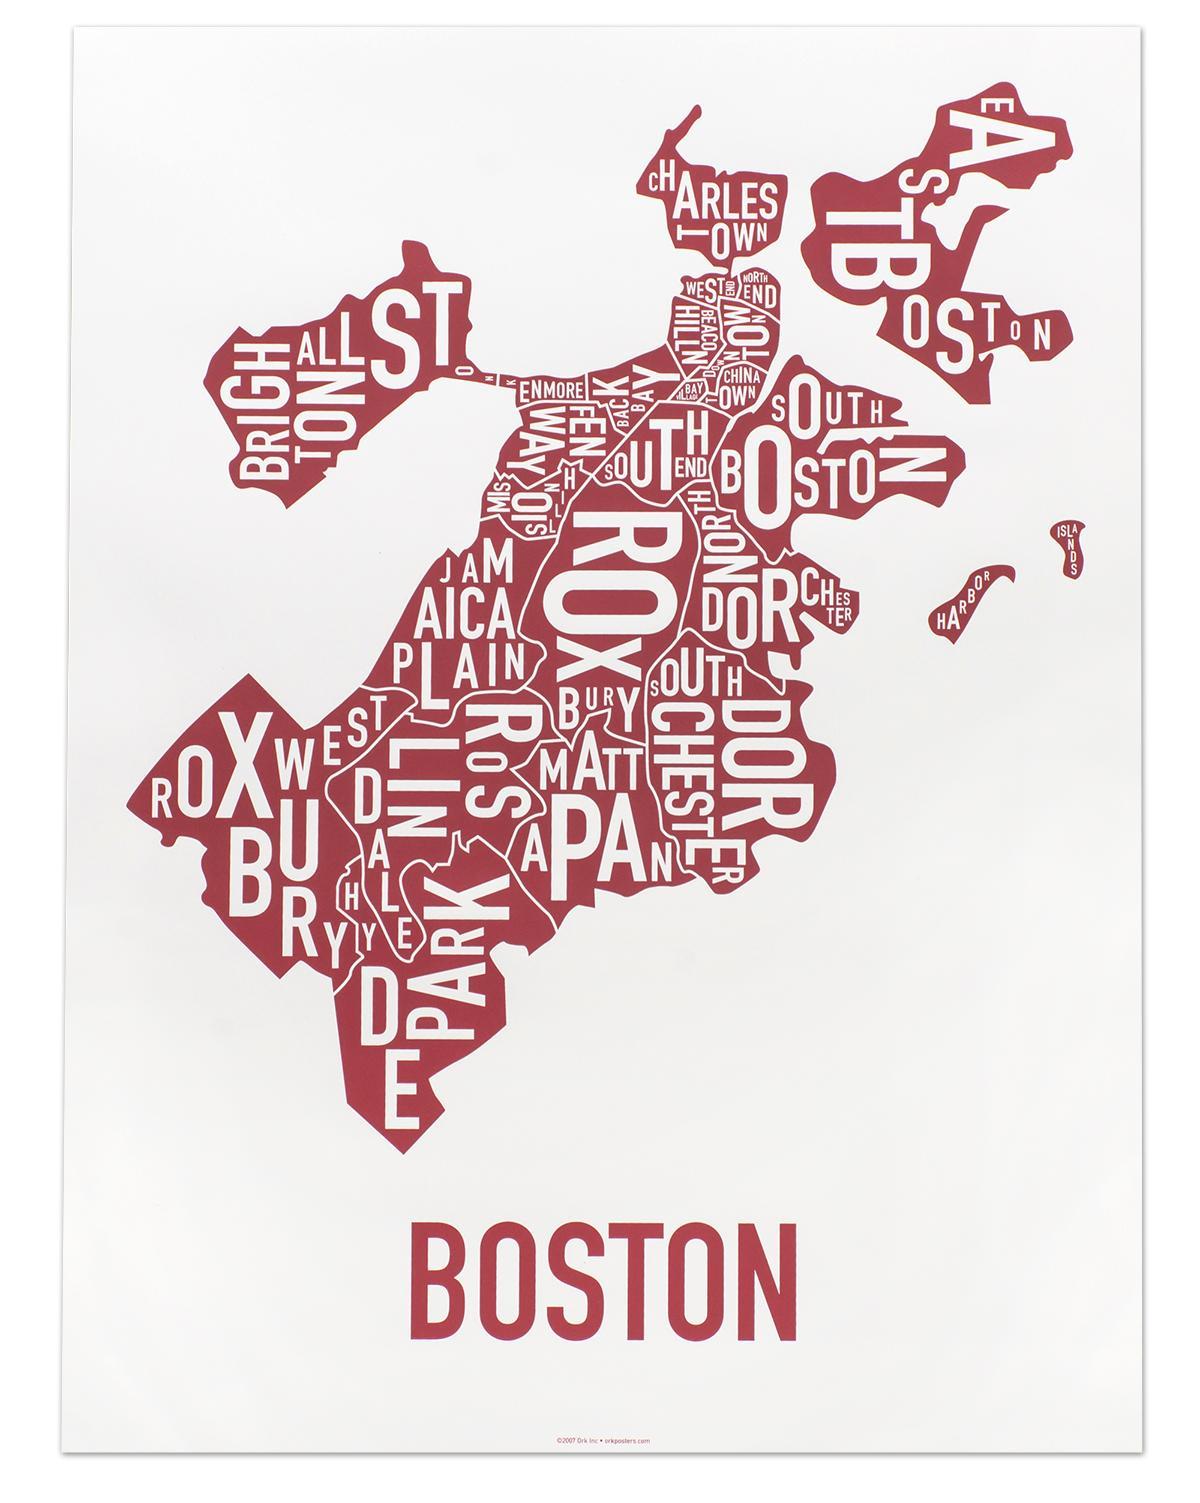 kaupungin Boston kartta